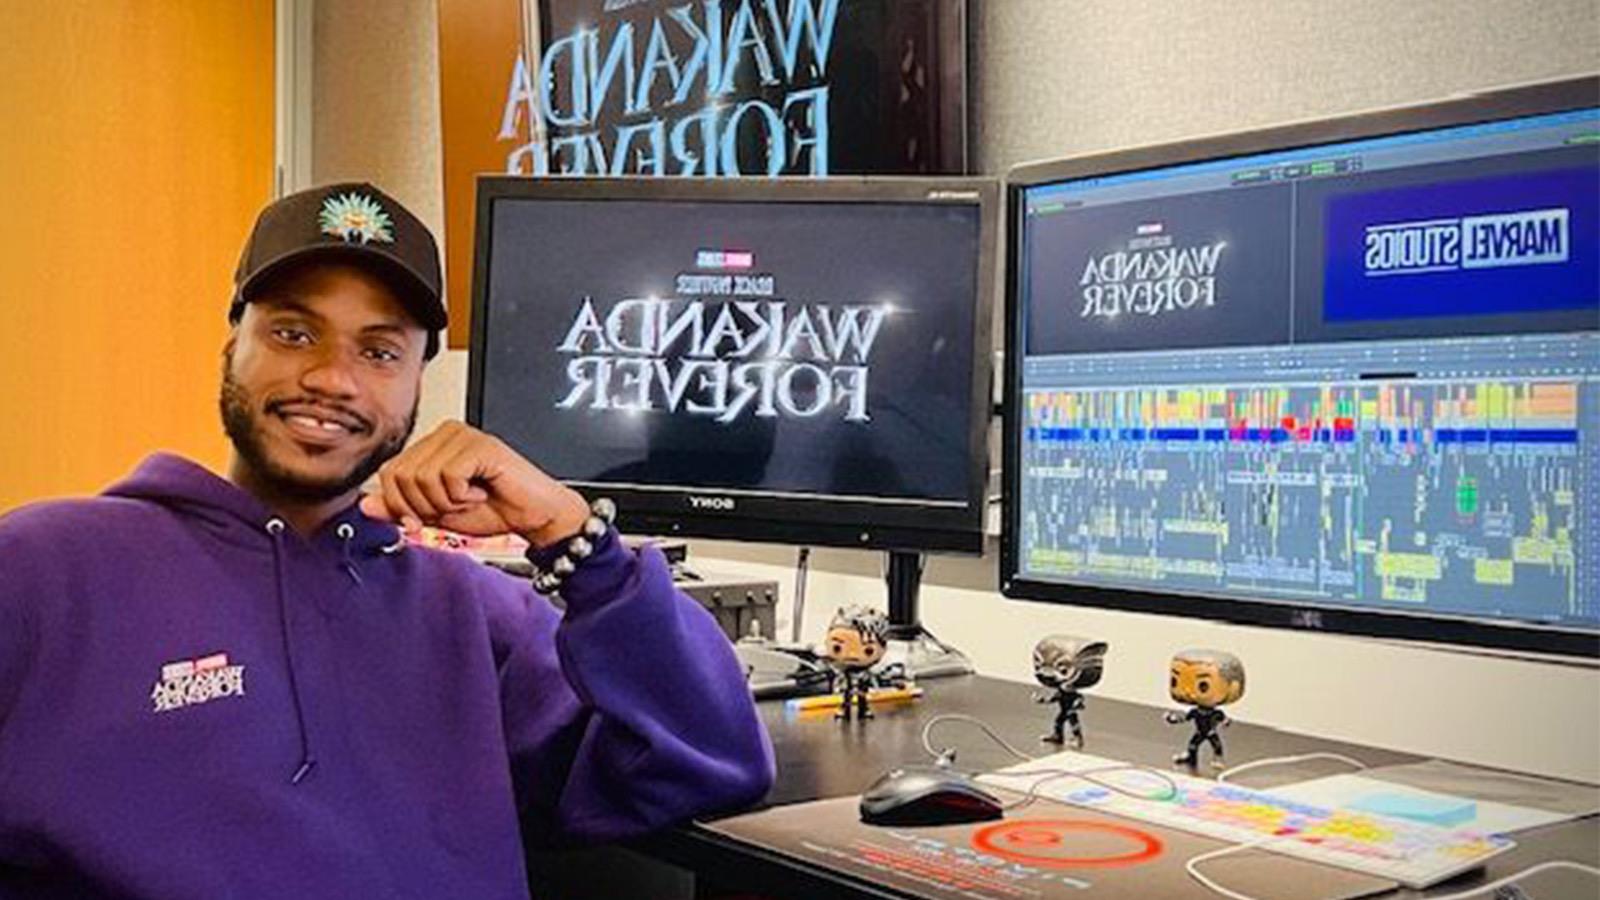 阿兰坐在一张桌子前，桌子上有多个显示器，上面写着“永远的瓦坎达”和“漫威工作室”.” He is wearing a purple hoodie.